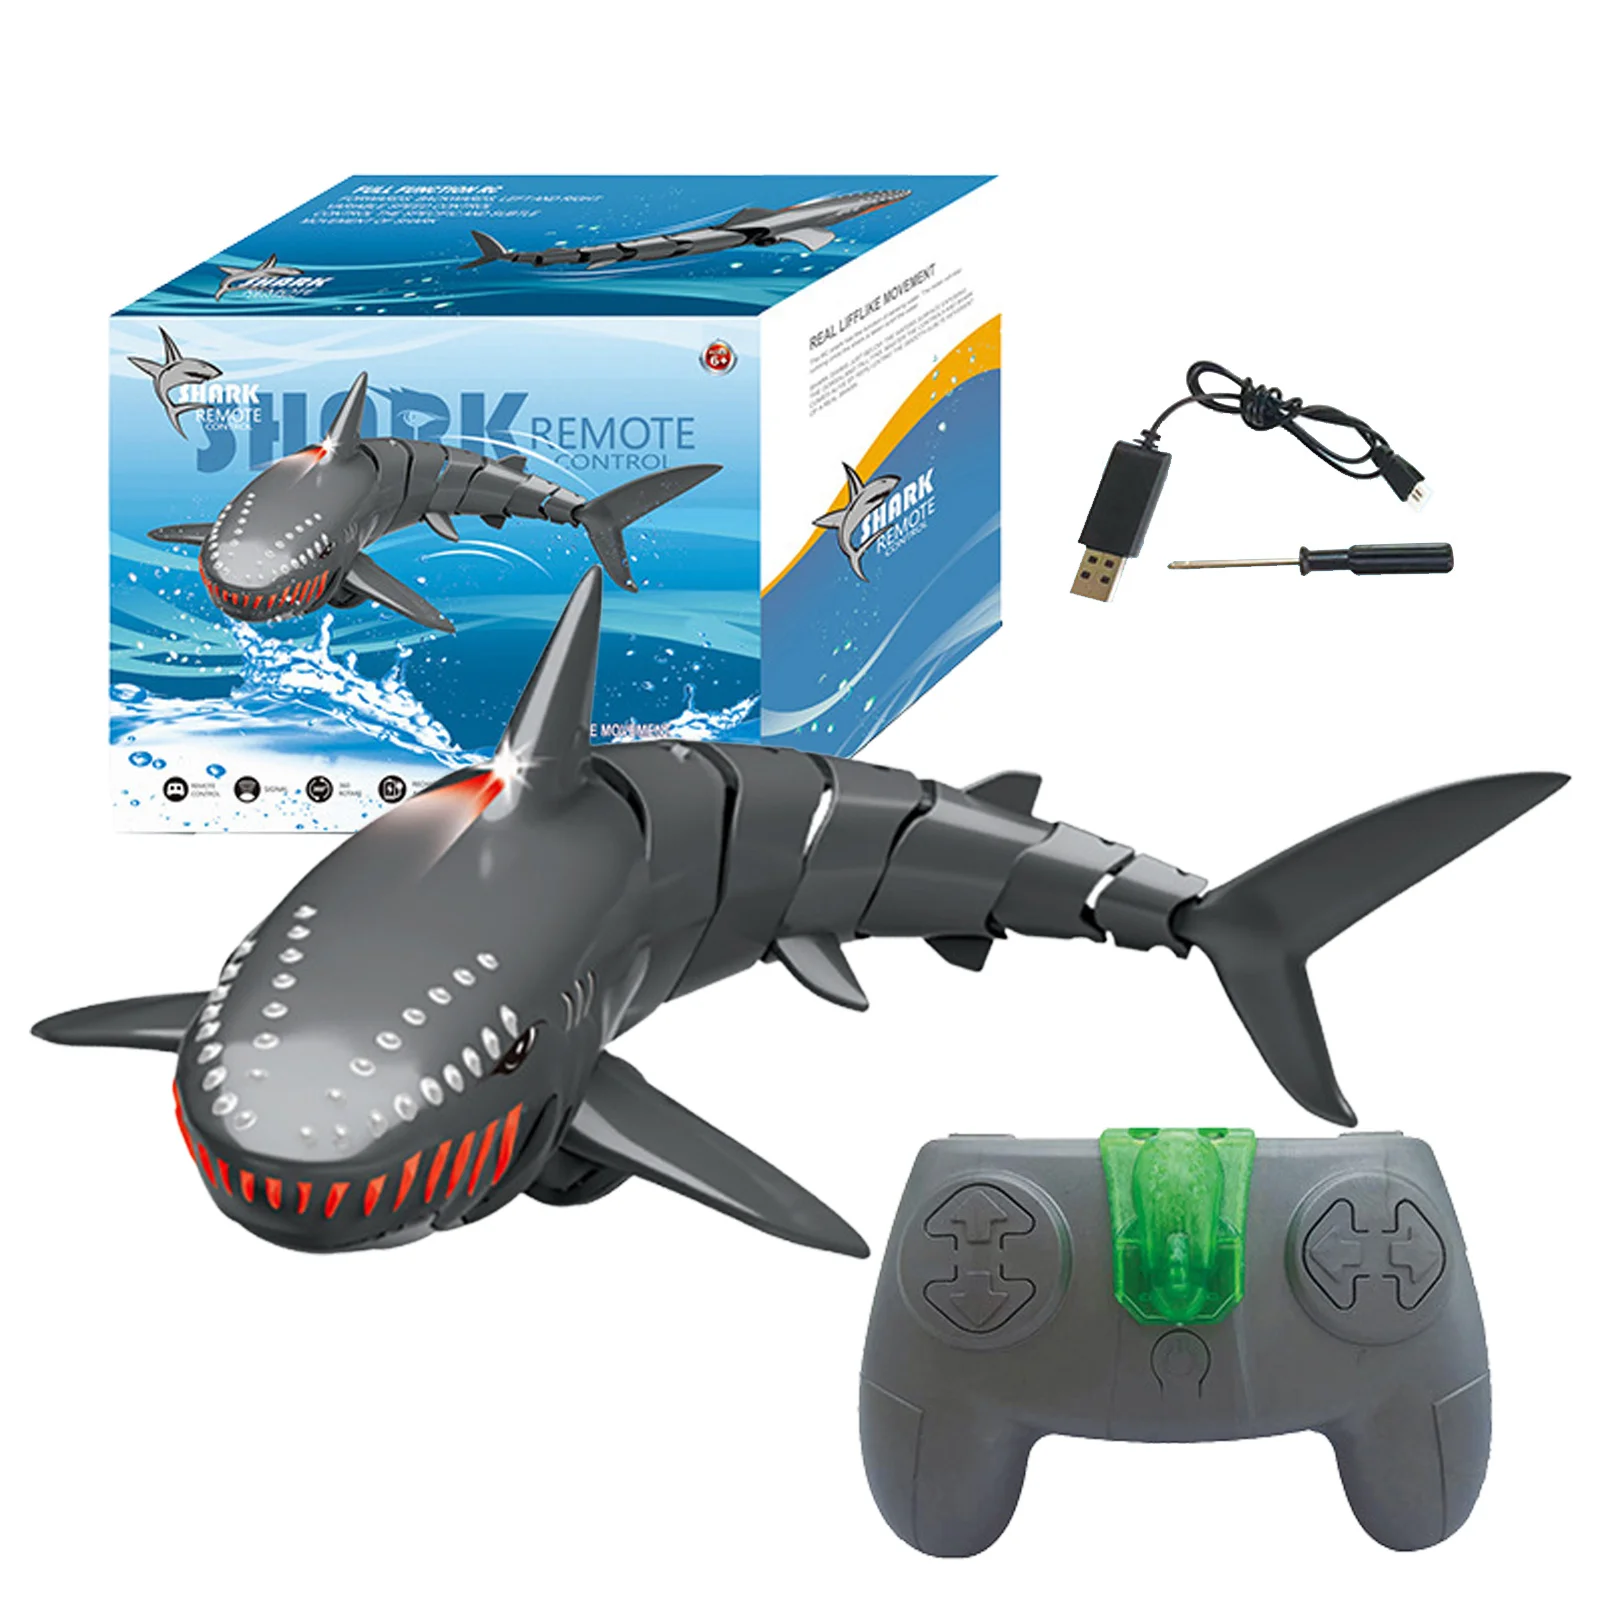 

Игрушечная лодка-Акула с дистанционным управлением, имитация акулы, радиоуправляемые лодки, игрушки для розыгрыша для детей, прочный морск...